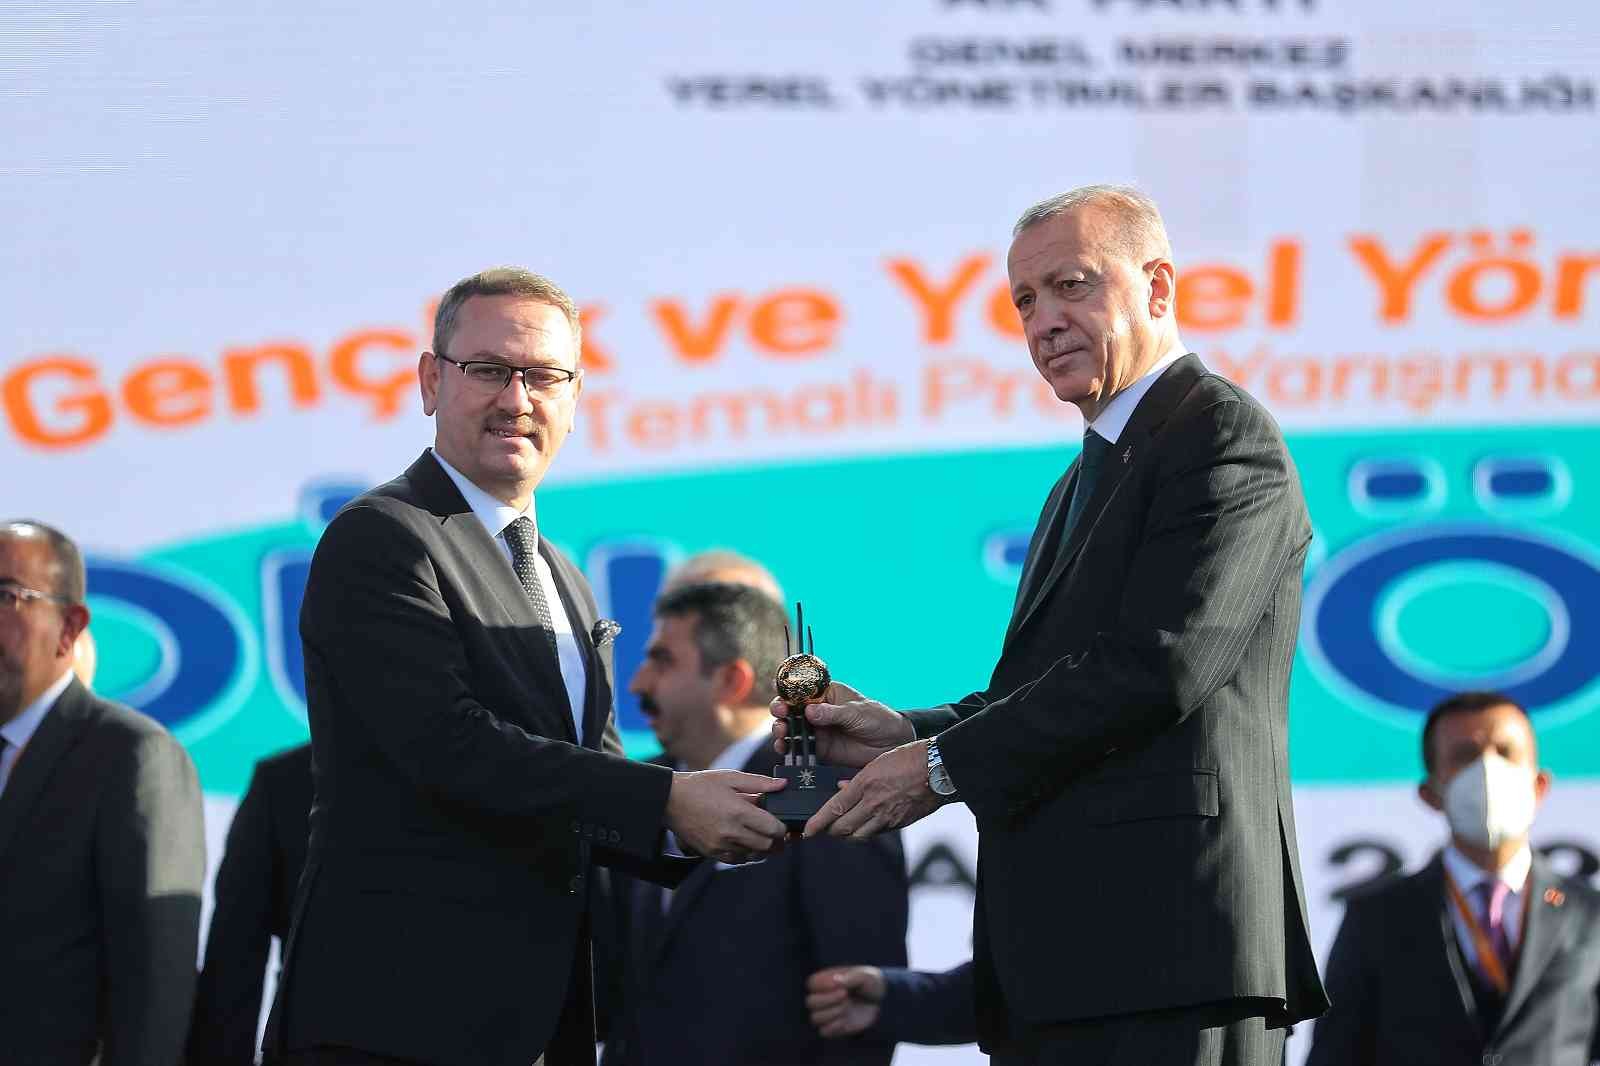 Cumhurbaşkanı Erdoğan’dan Başakşehir’e bir gençlik ödülü daha #istanbul